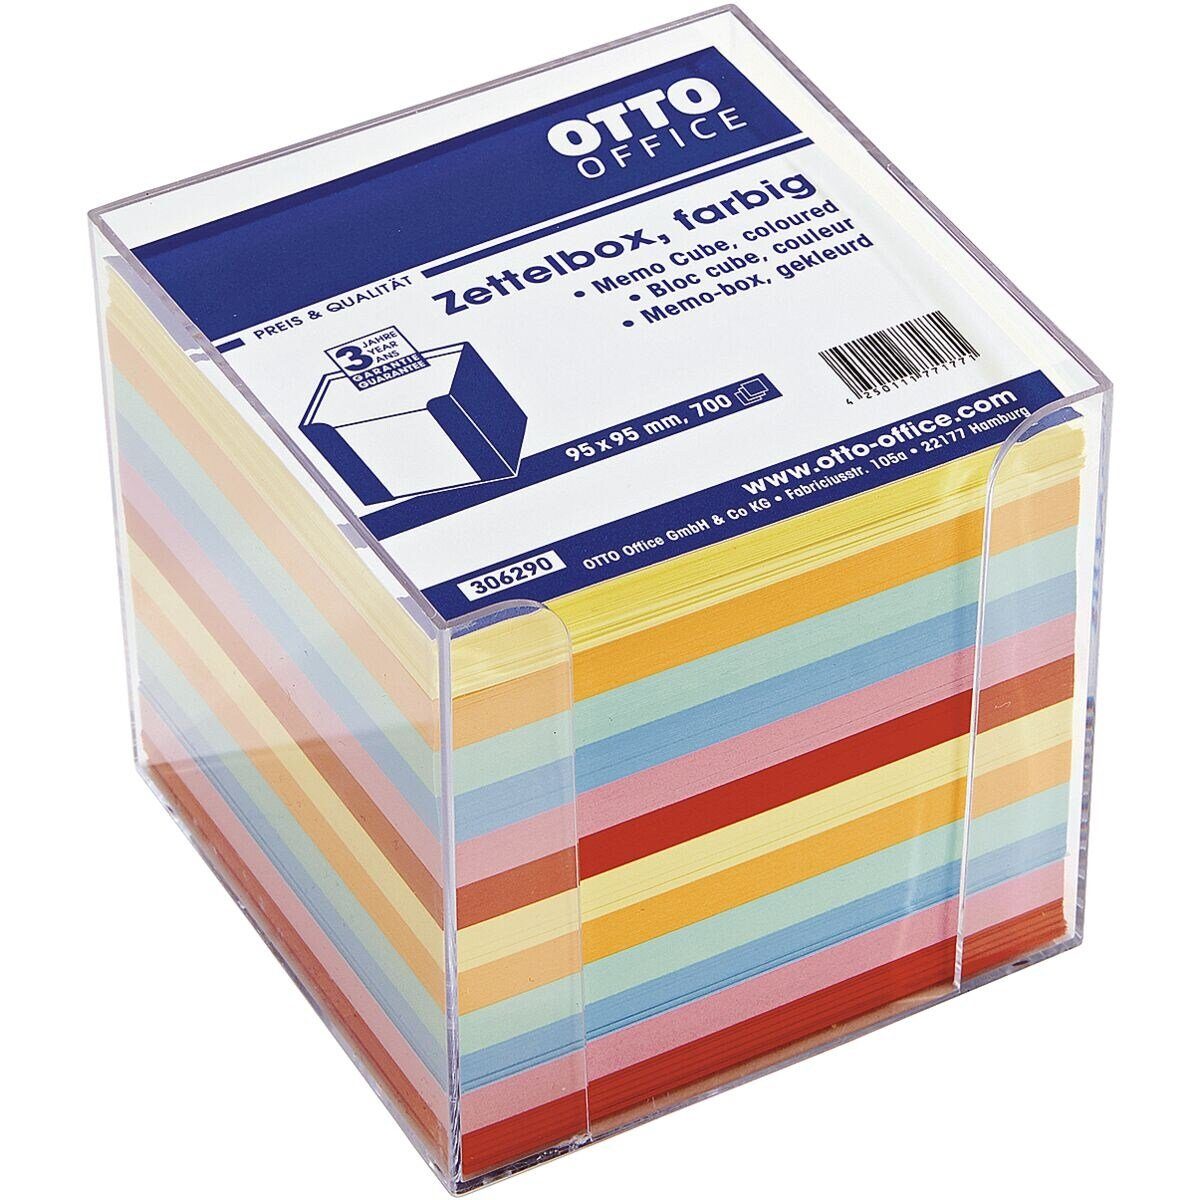 Otto Office Notizzettel, Zettelbox für Papiergröße 90x90 mm, inkl. 700 Blatt